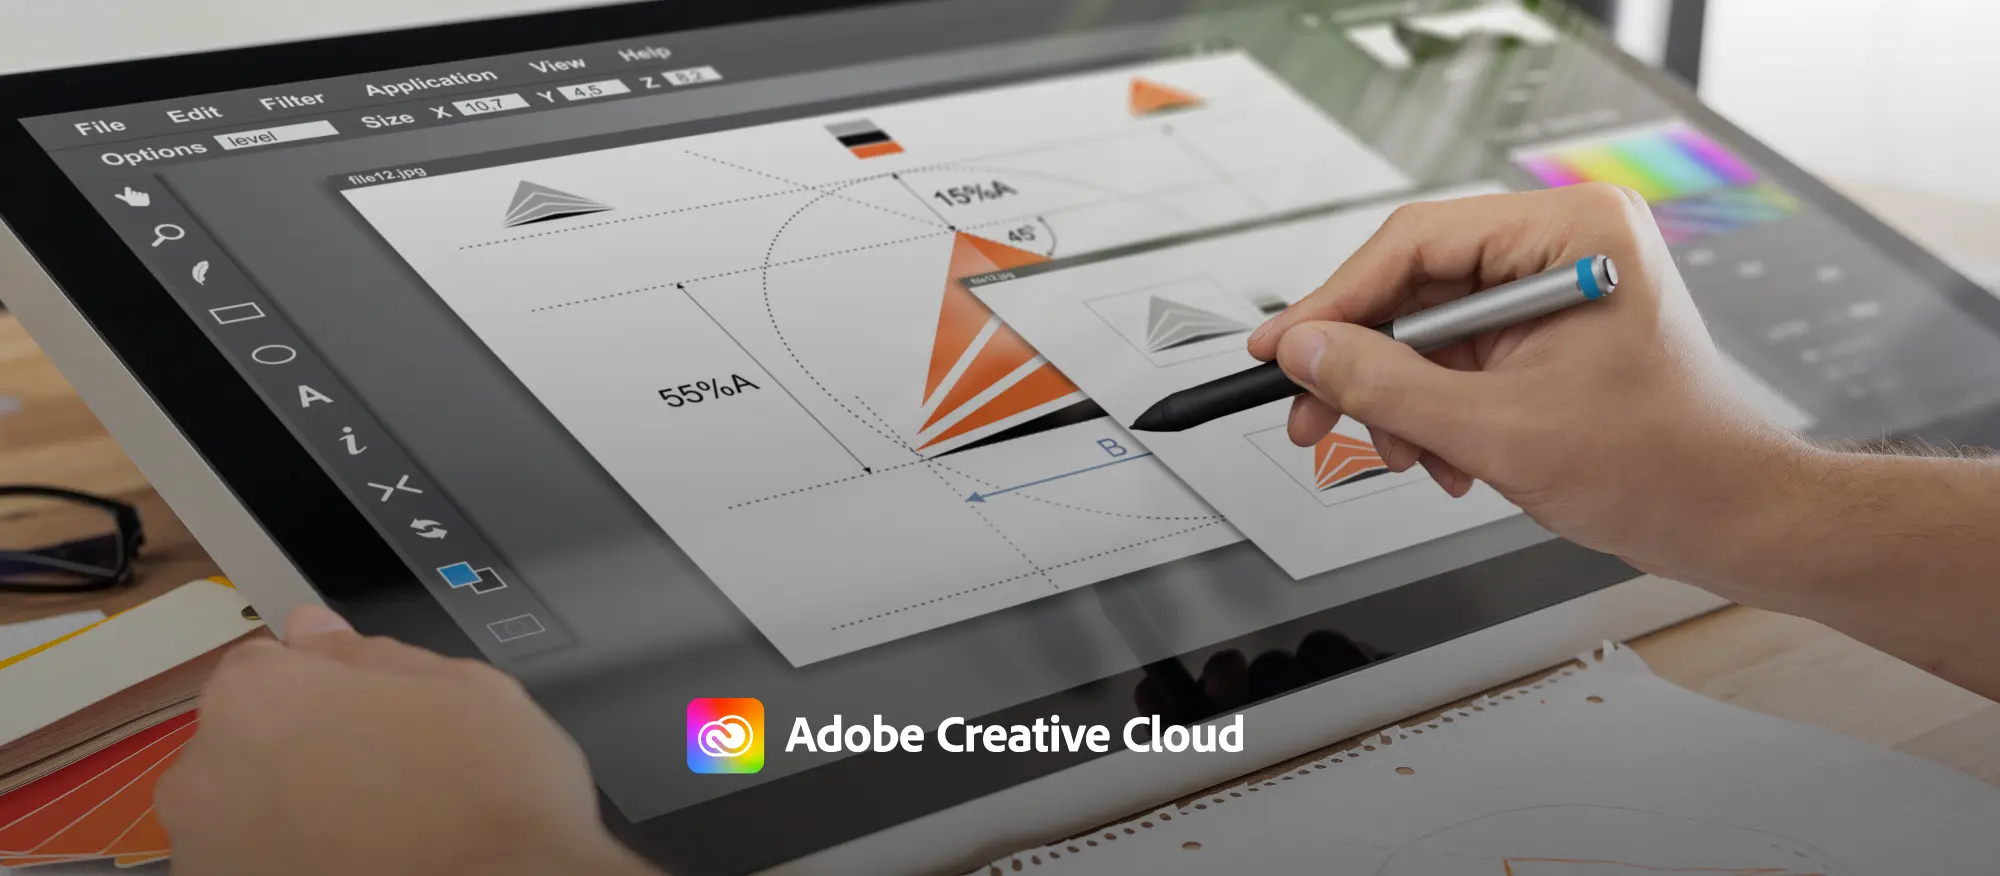 notebook com aplicativo de design aberto ao lado de uma mão segurando uma caneta eletrônica criando um logotipo